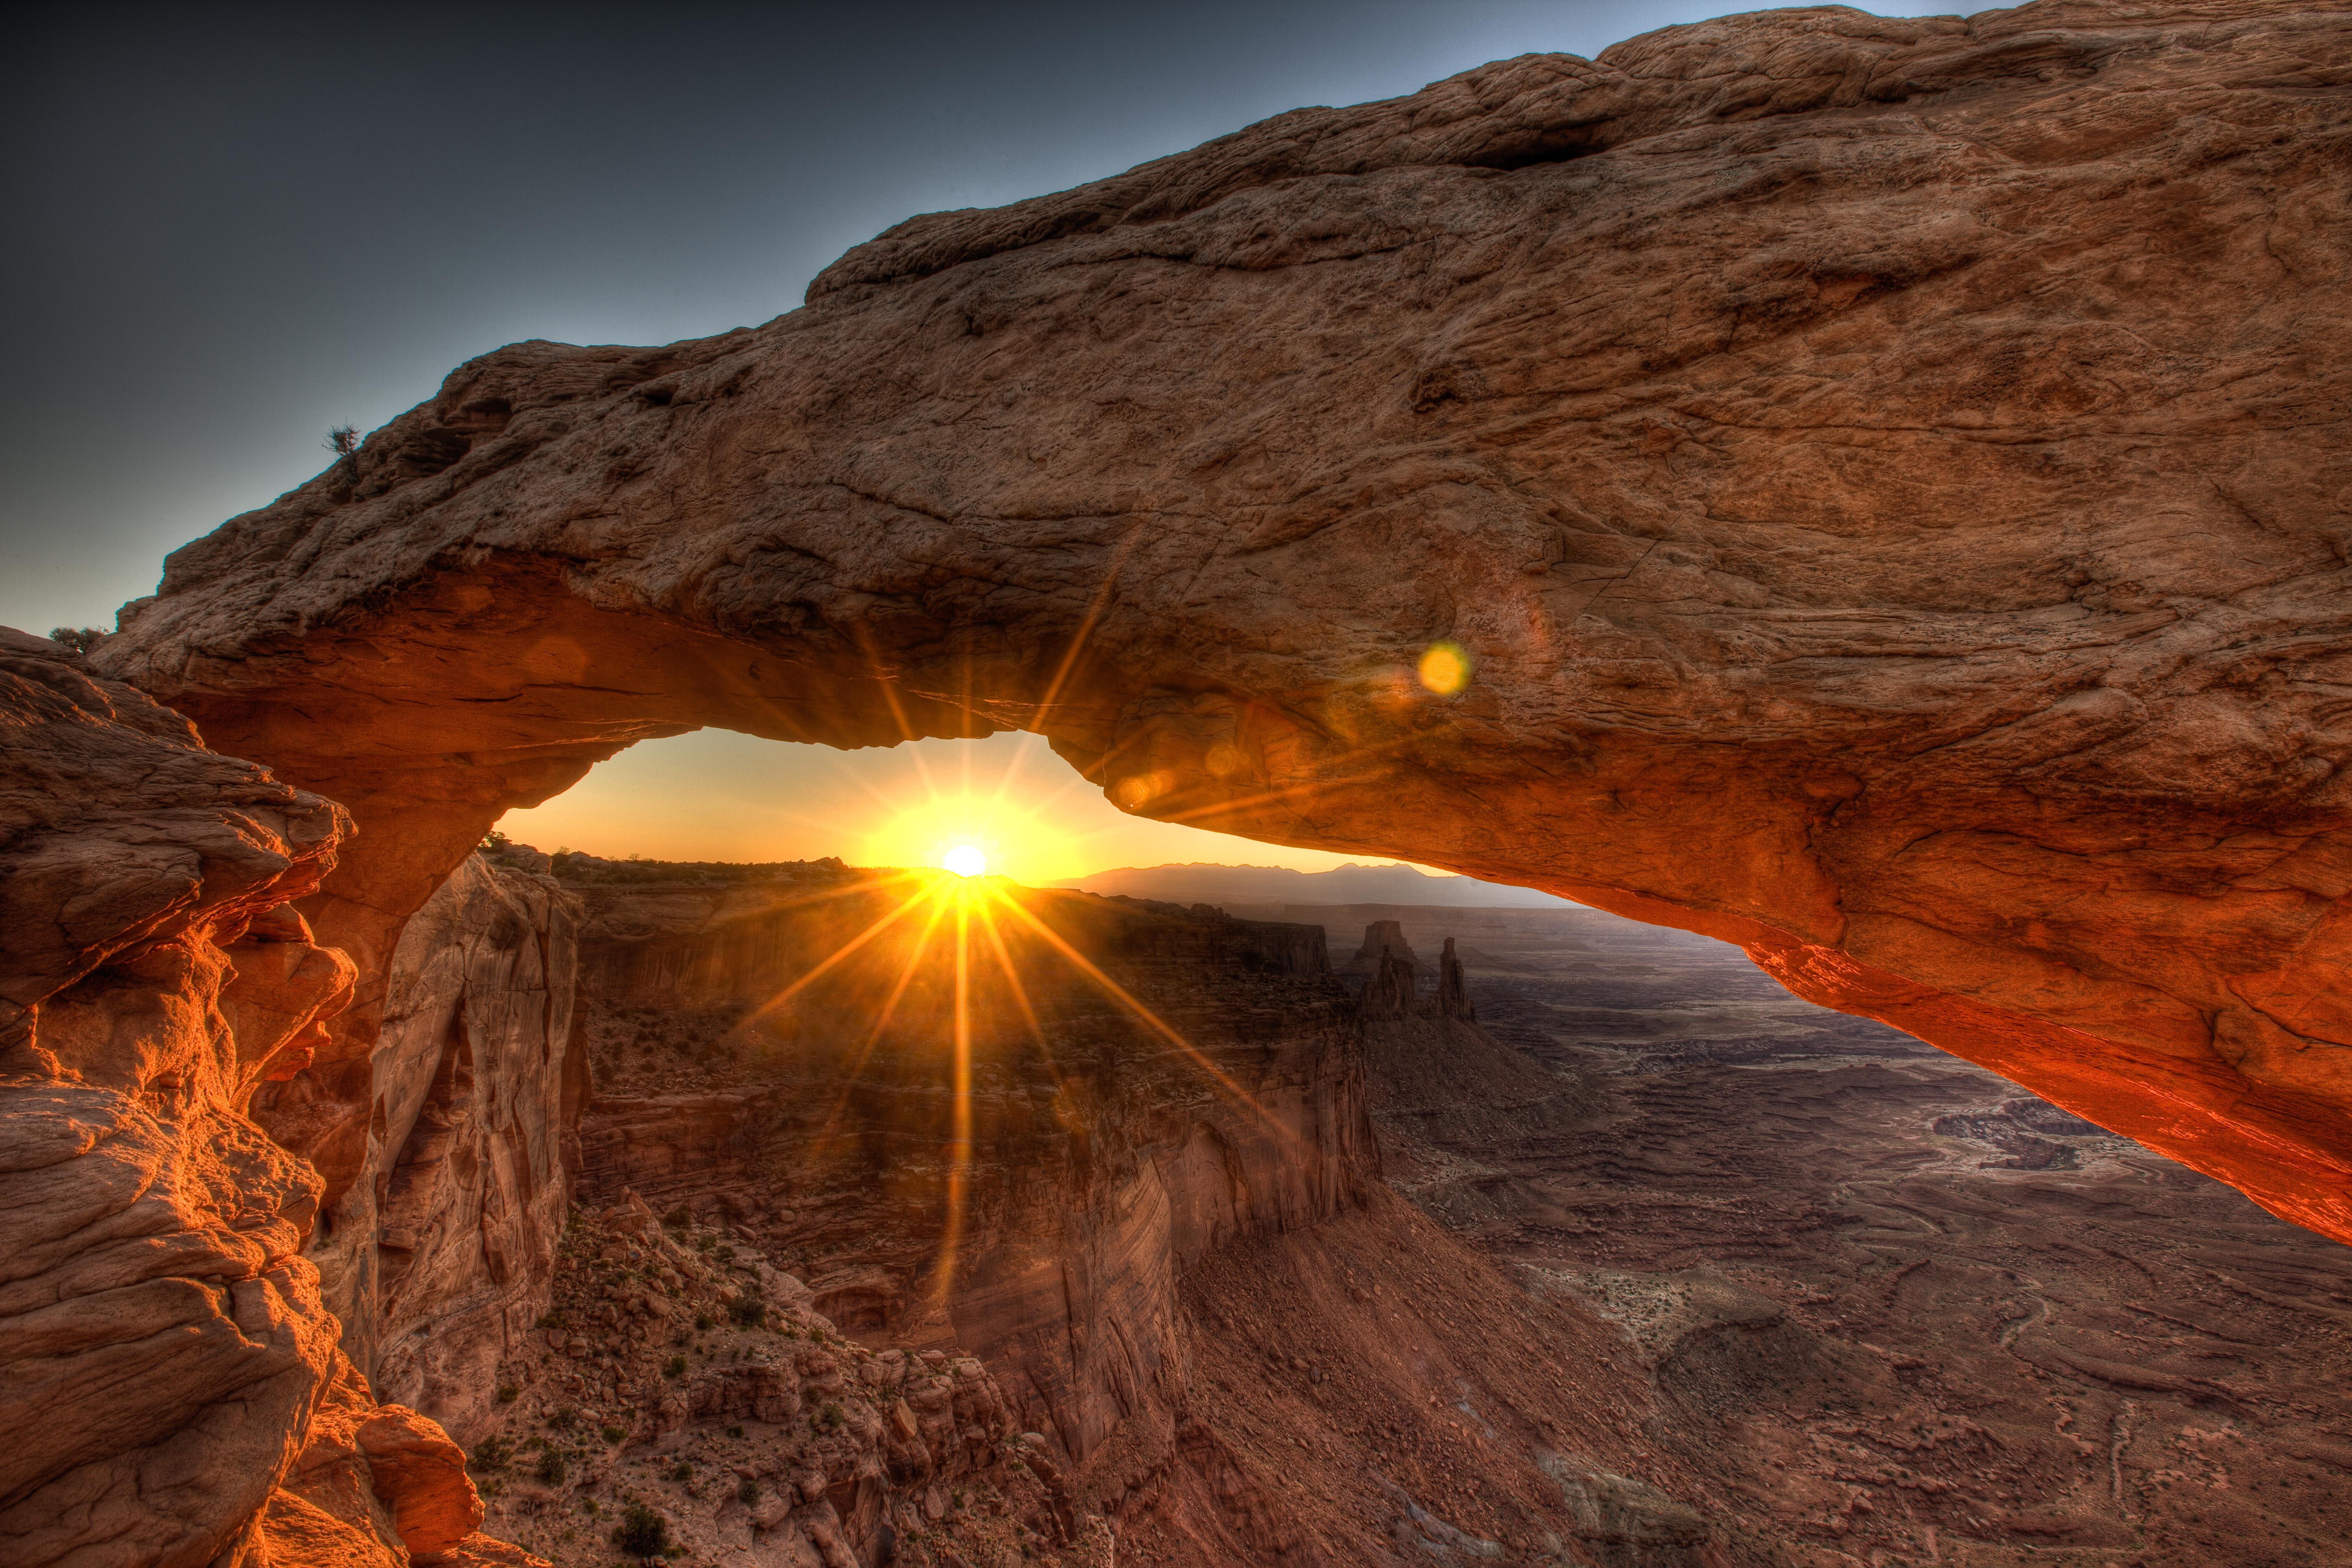 Картинка: Каньон, солнце, закат, лучи, парк, арка